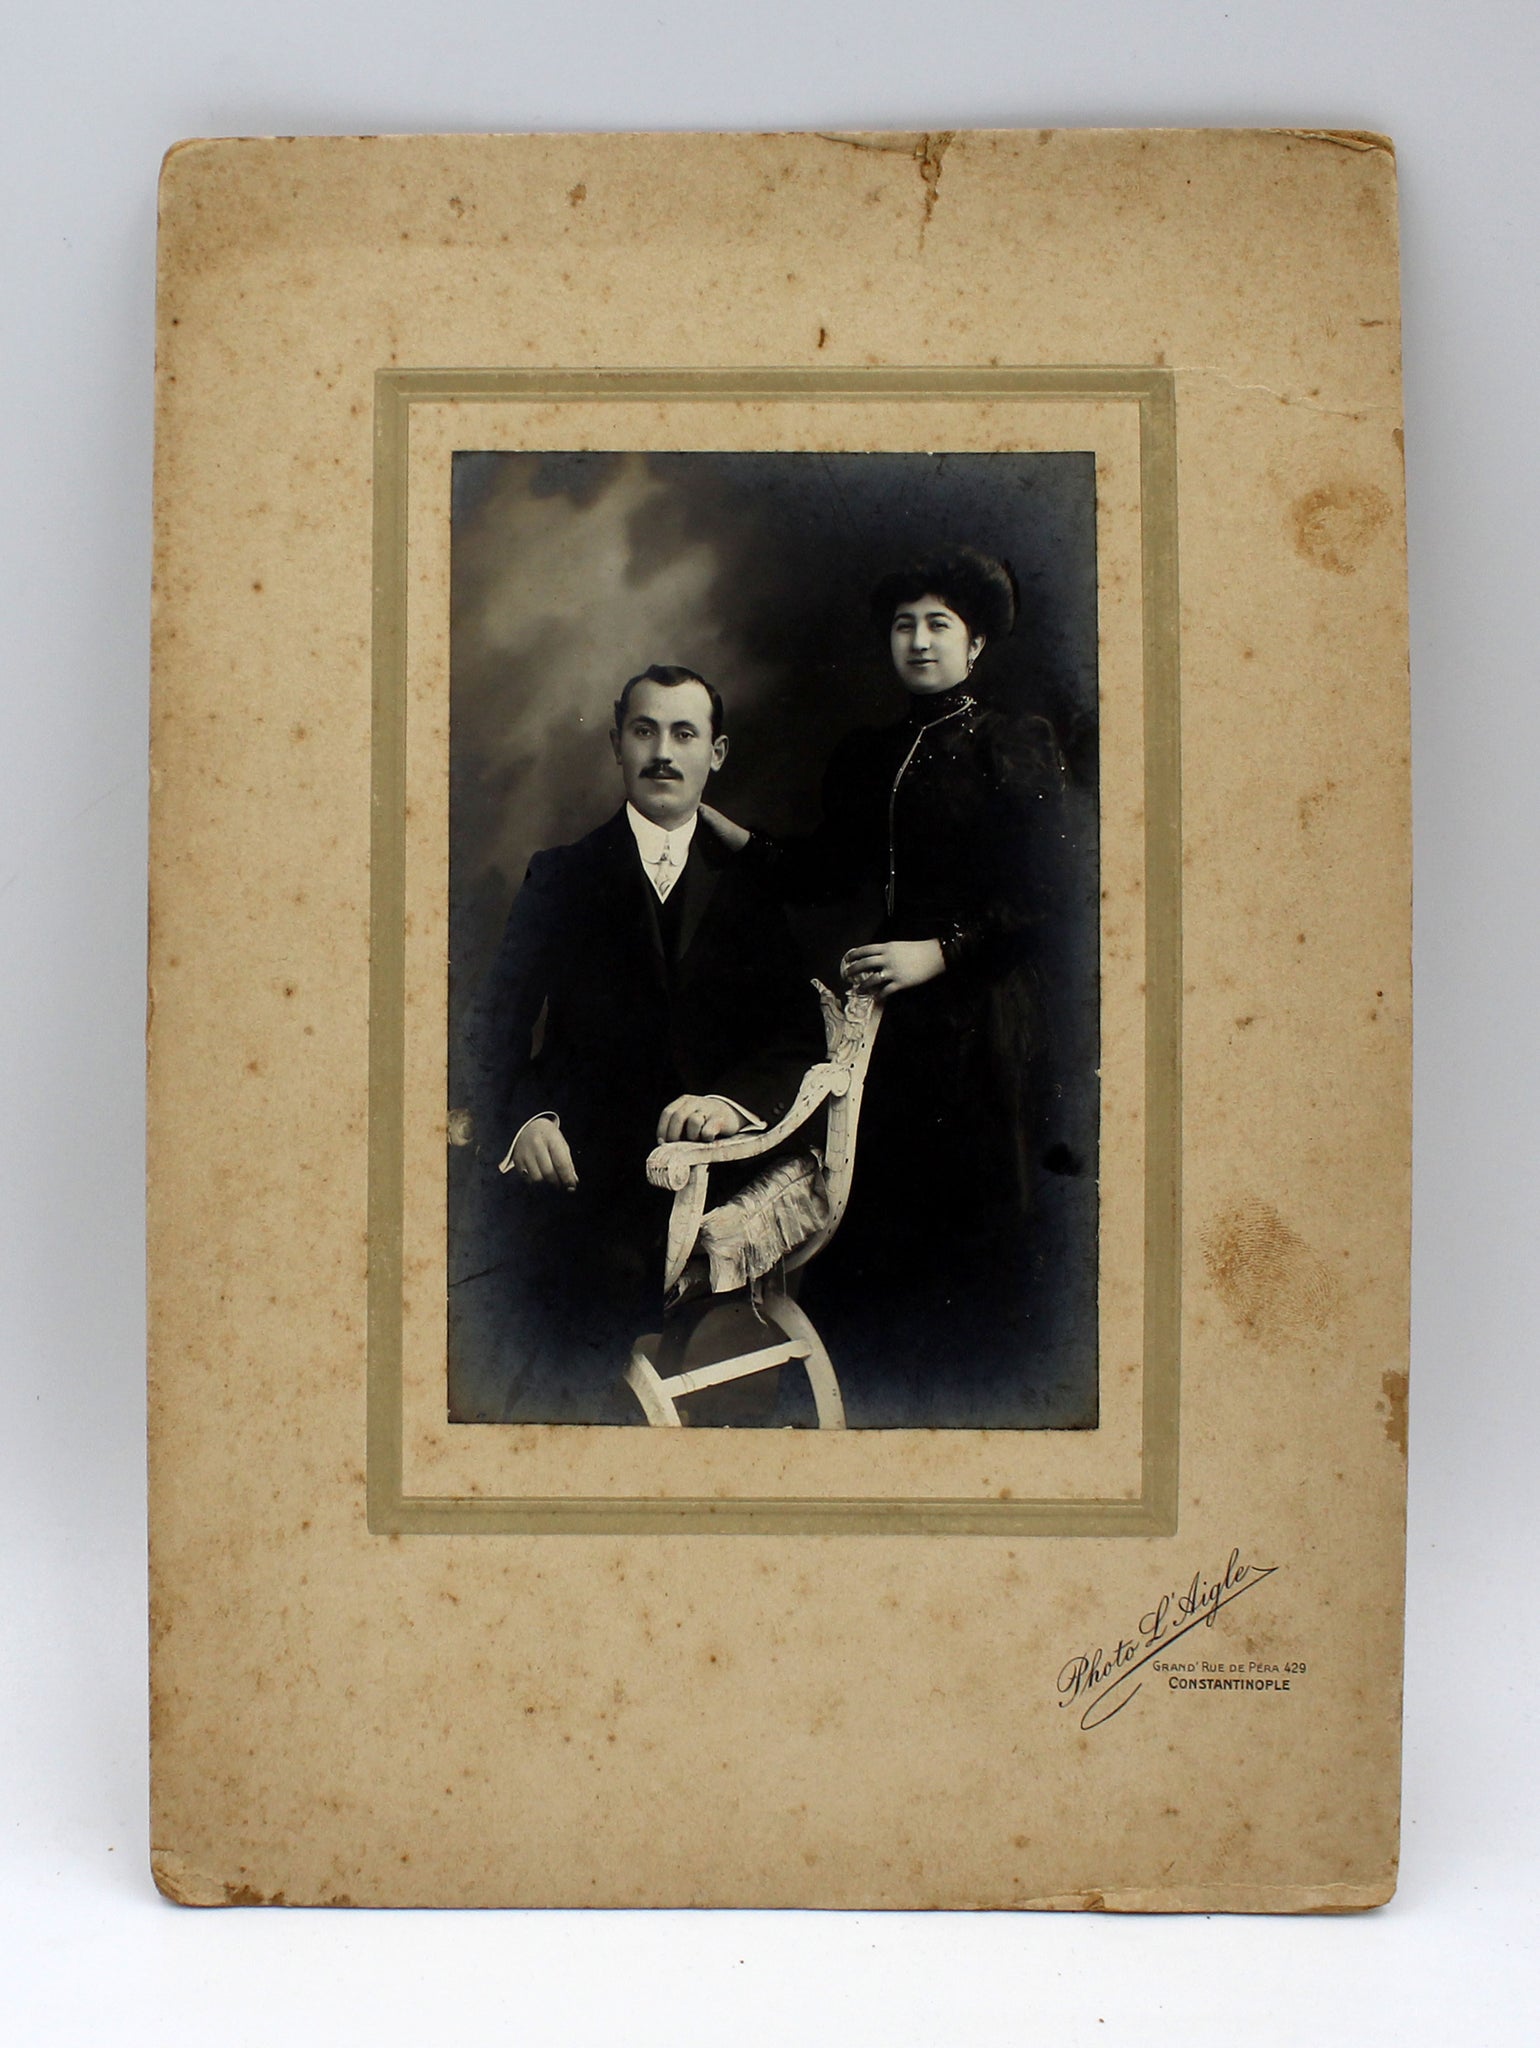 [KABİN FOTO] Photo L'Aigle (Constantinople) de çekilmiş orijinal paspartusunda Osmanlı dönemi evli çift fotoğrafı